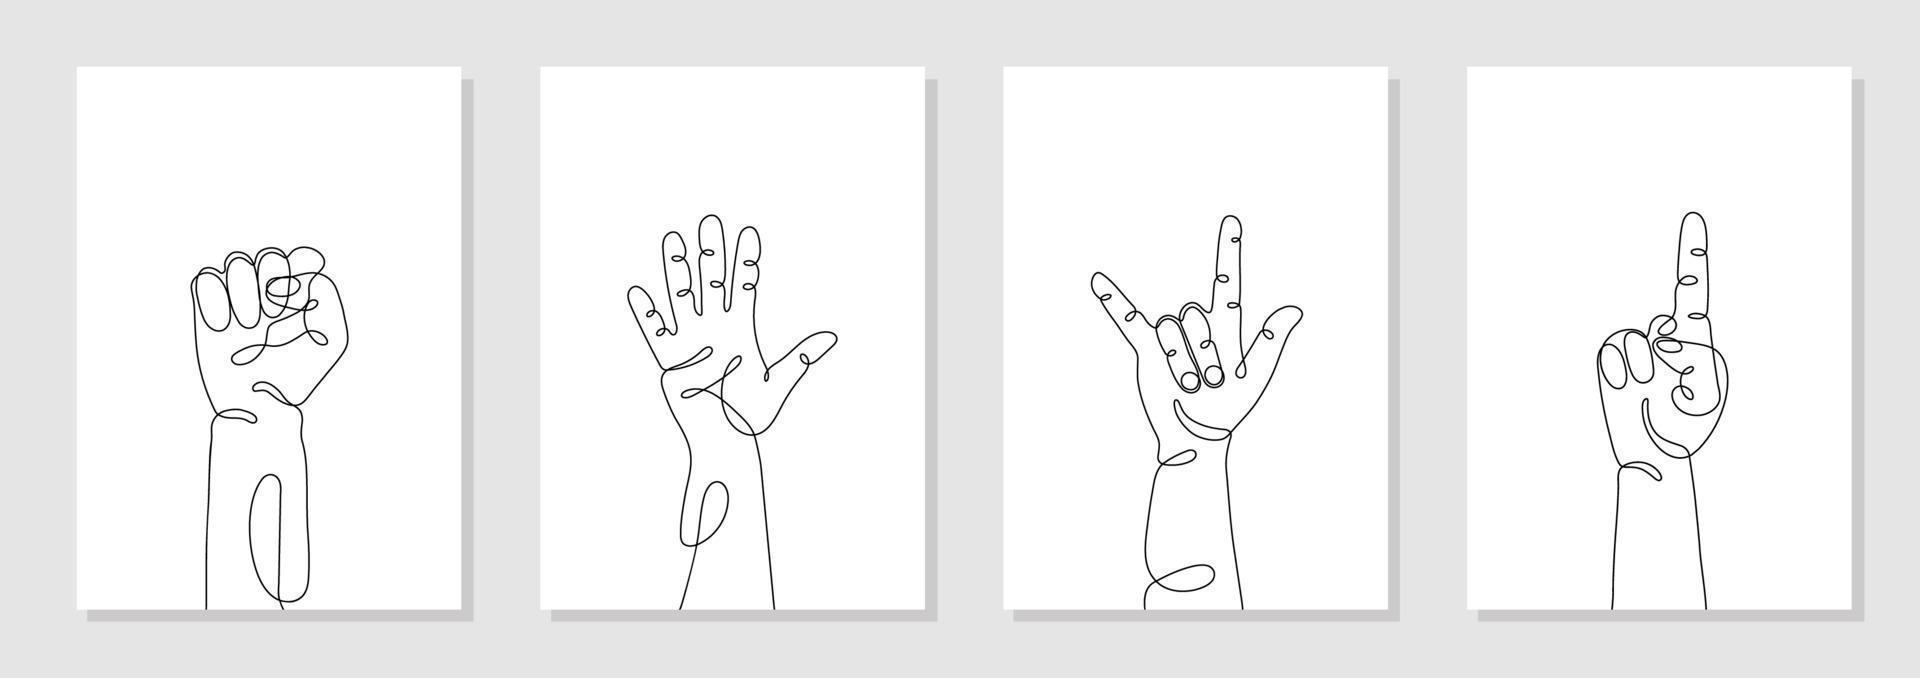 einzeilig gezeichnete handgesten gesetzt, minimalistische menschliche hände mit faust, fünf, hallo, rock, eins, zeigen. dynamischer kontinuierlicher einzeiliger grafischer Vektor